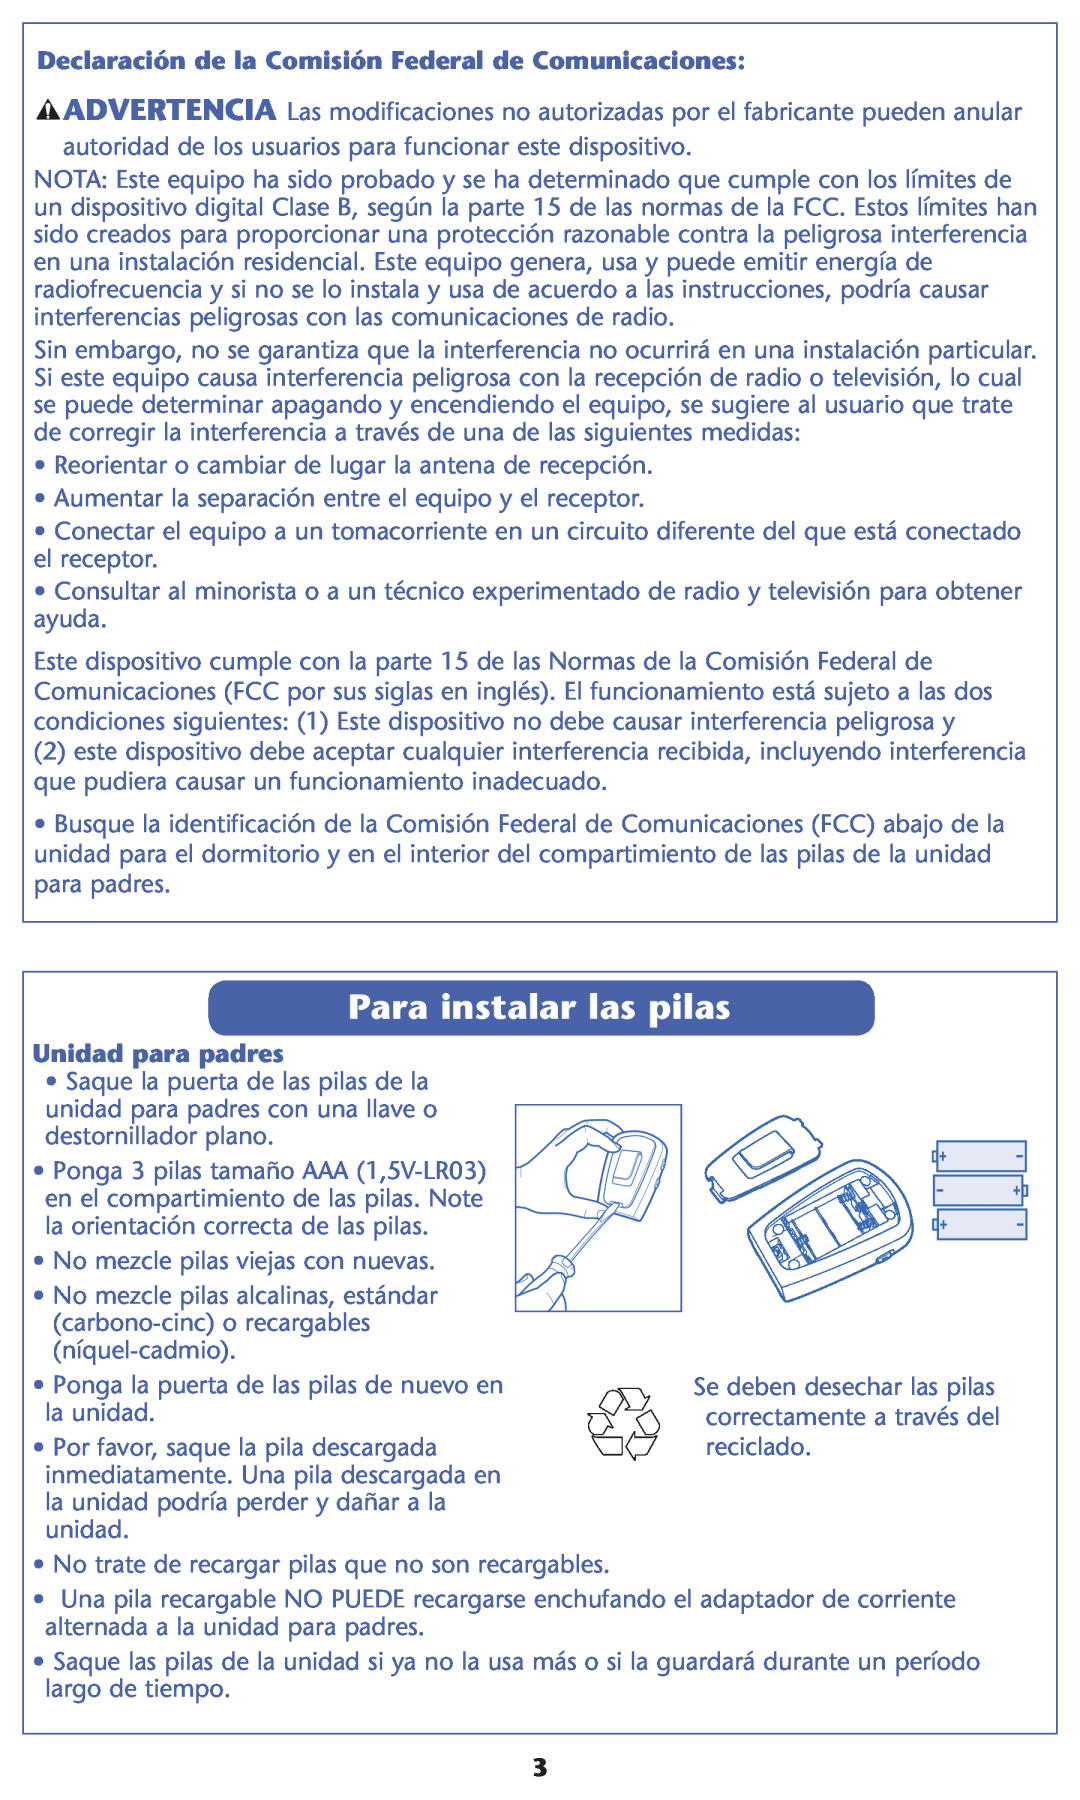 Graco 2L03 warranty Para instalar las pilas, $Eclaraciønrde La #Omisiøn &Ederalede #Omunicaciones, Unidad para padres 